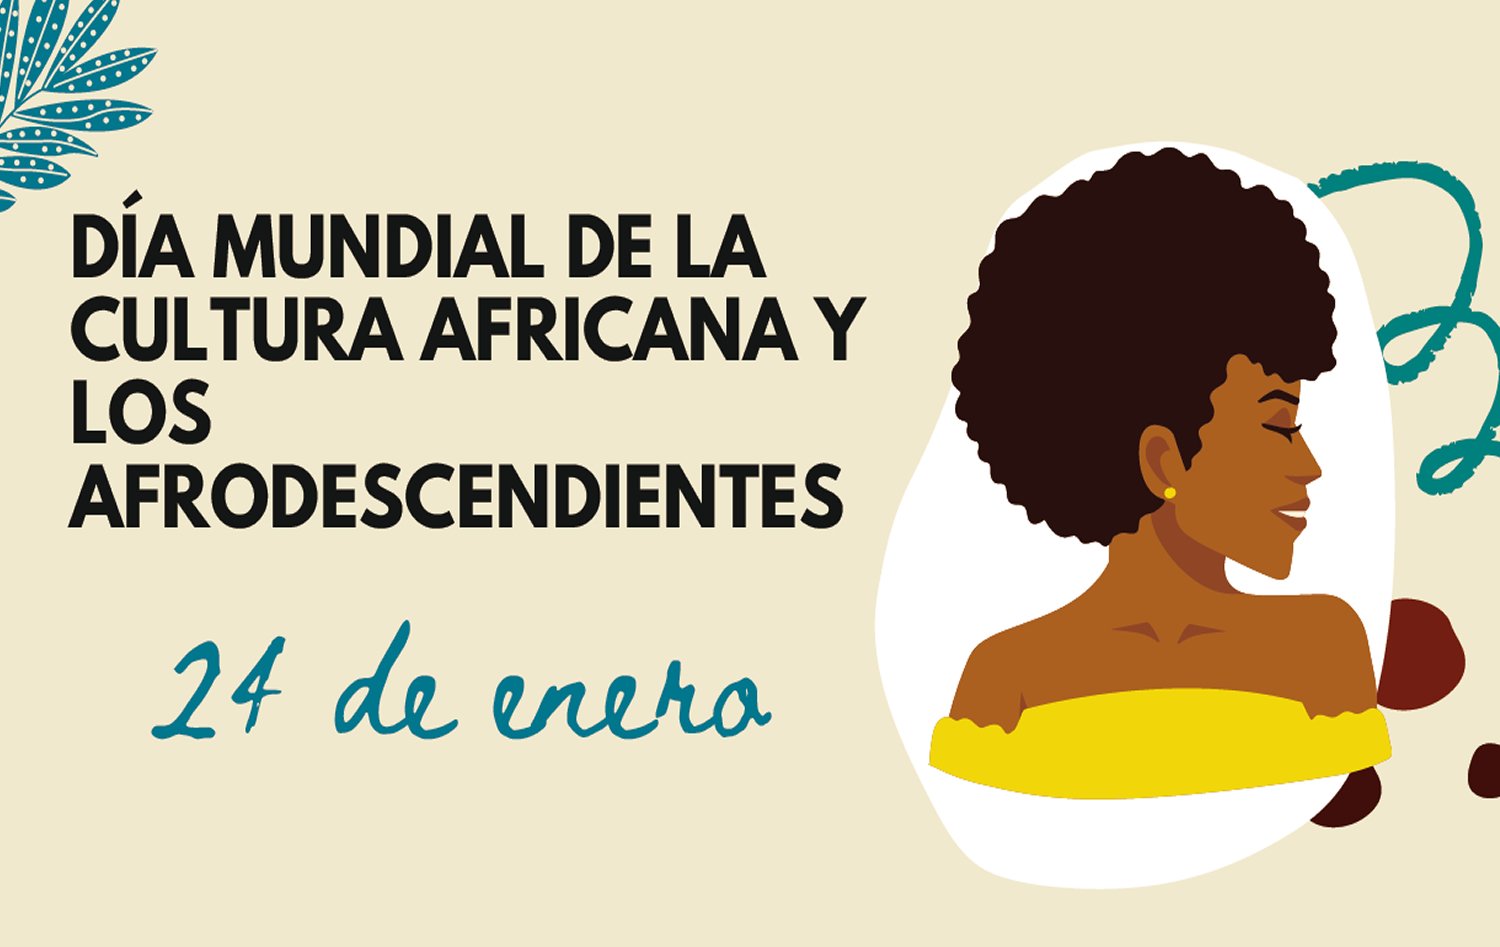 Dia mundial de la cultura africana y los afrodescendientes